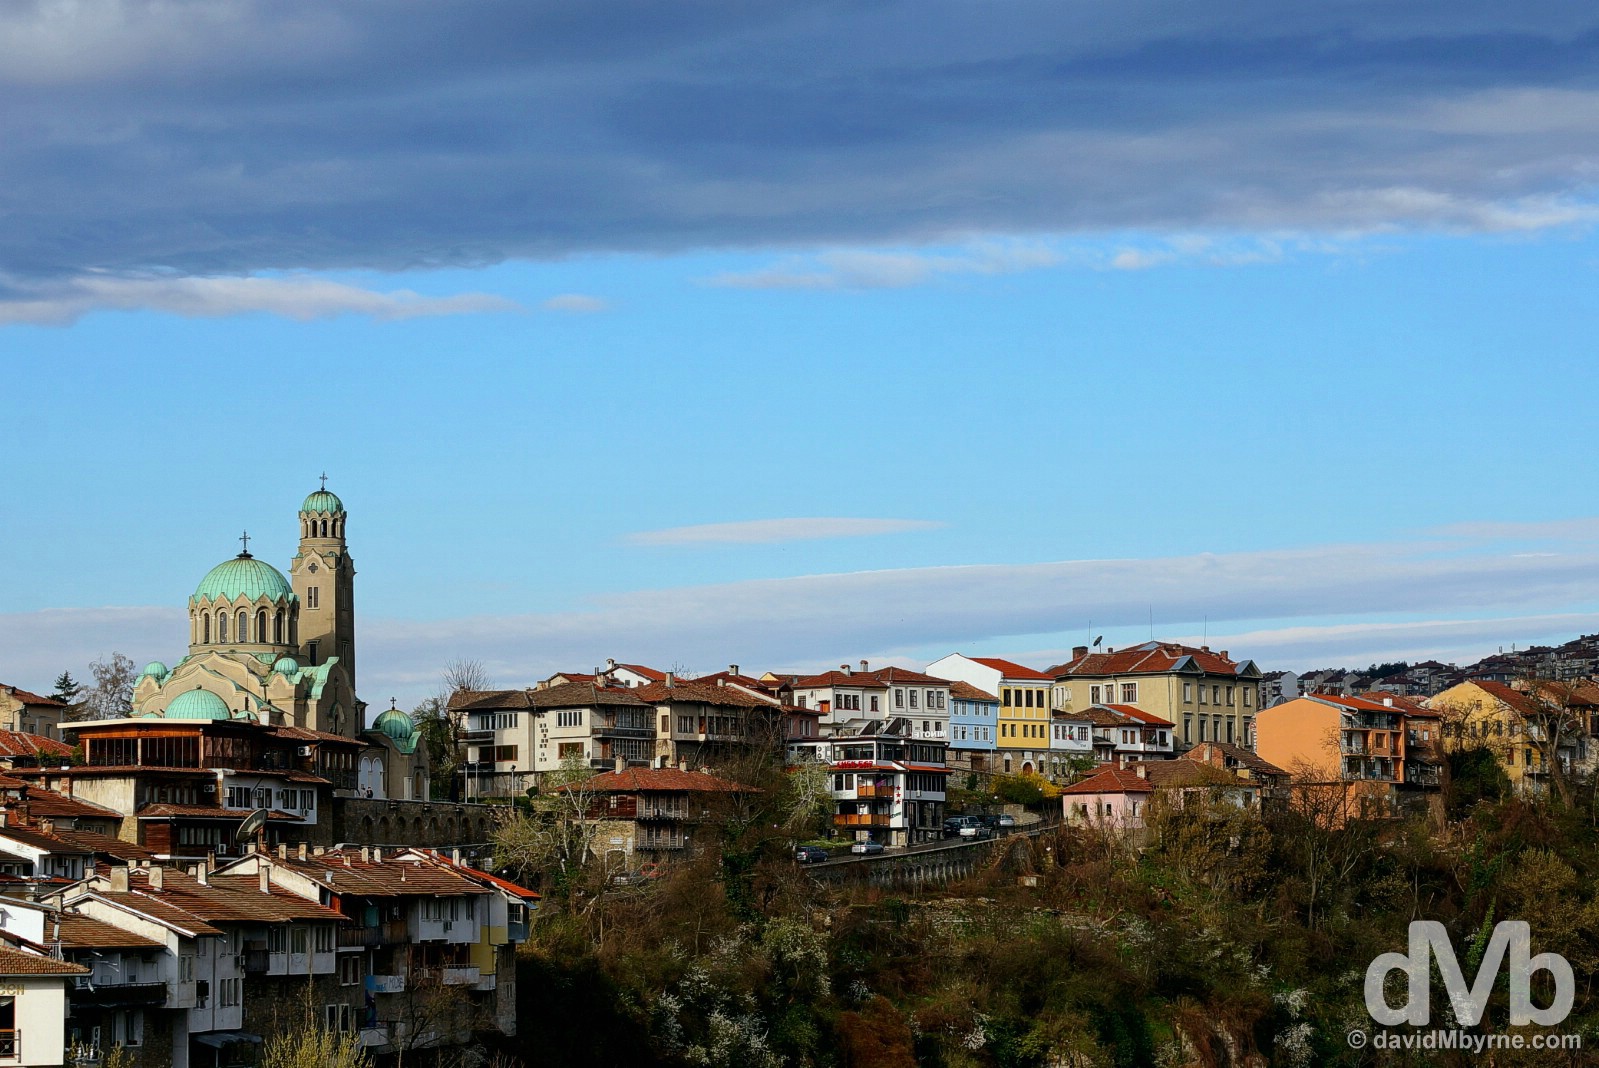 Veliko Tarnovo, Bulgaria. March 31, 2015.